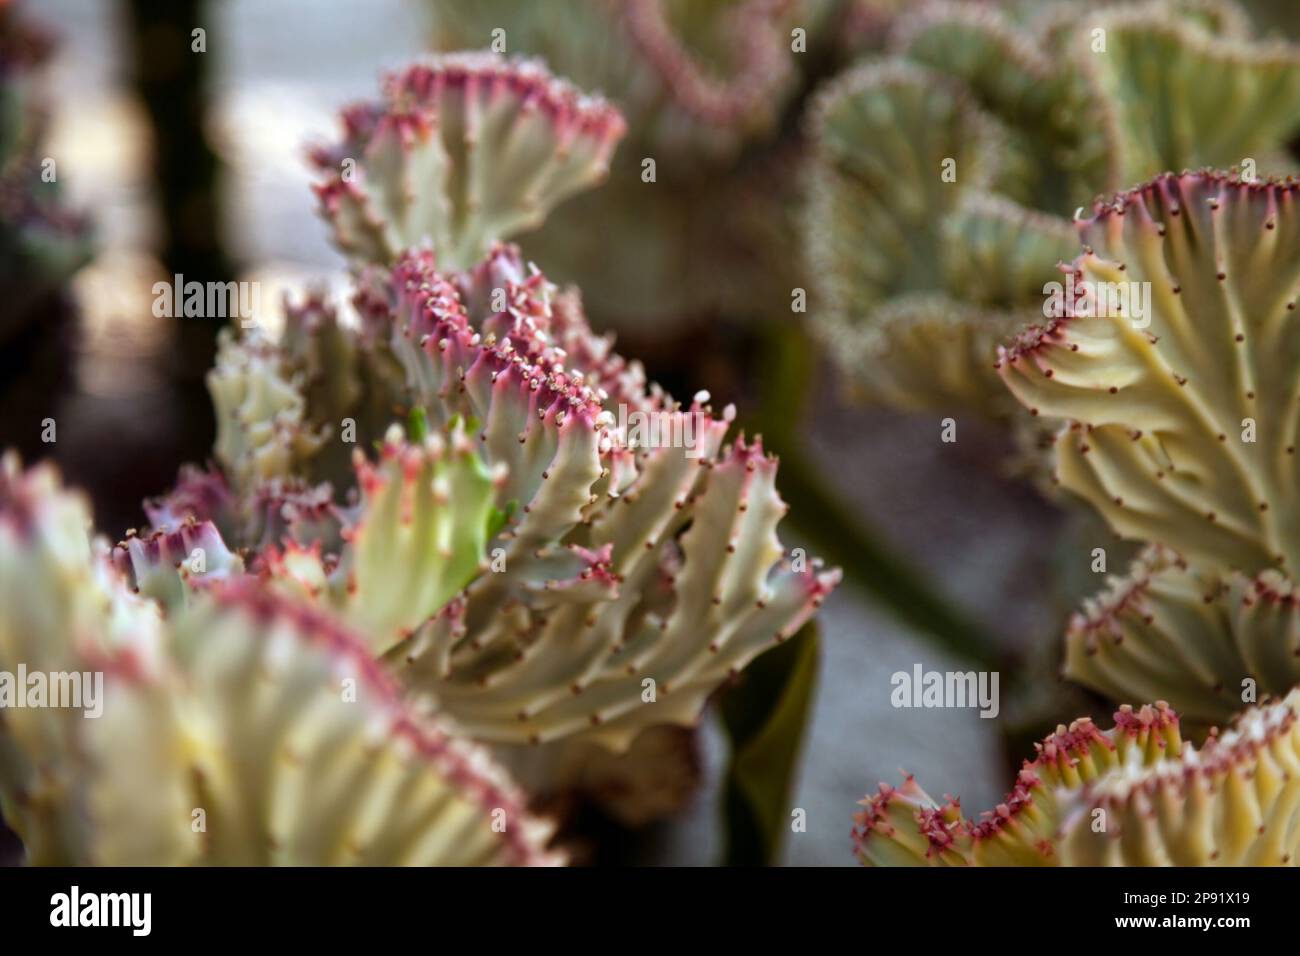 Viele Euphorbia Lactea Cristata Pflanzen in einem Garten. Wunderschöne Korallen Cactus Strauch im freien Hintergrund Stockfoto